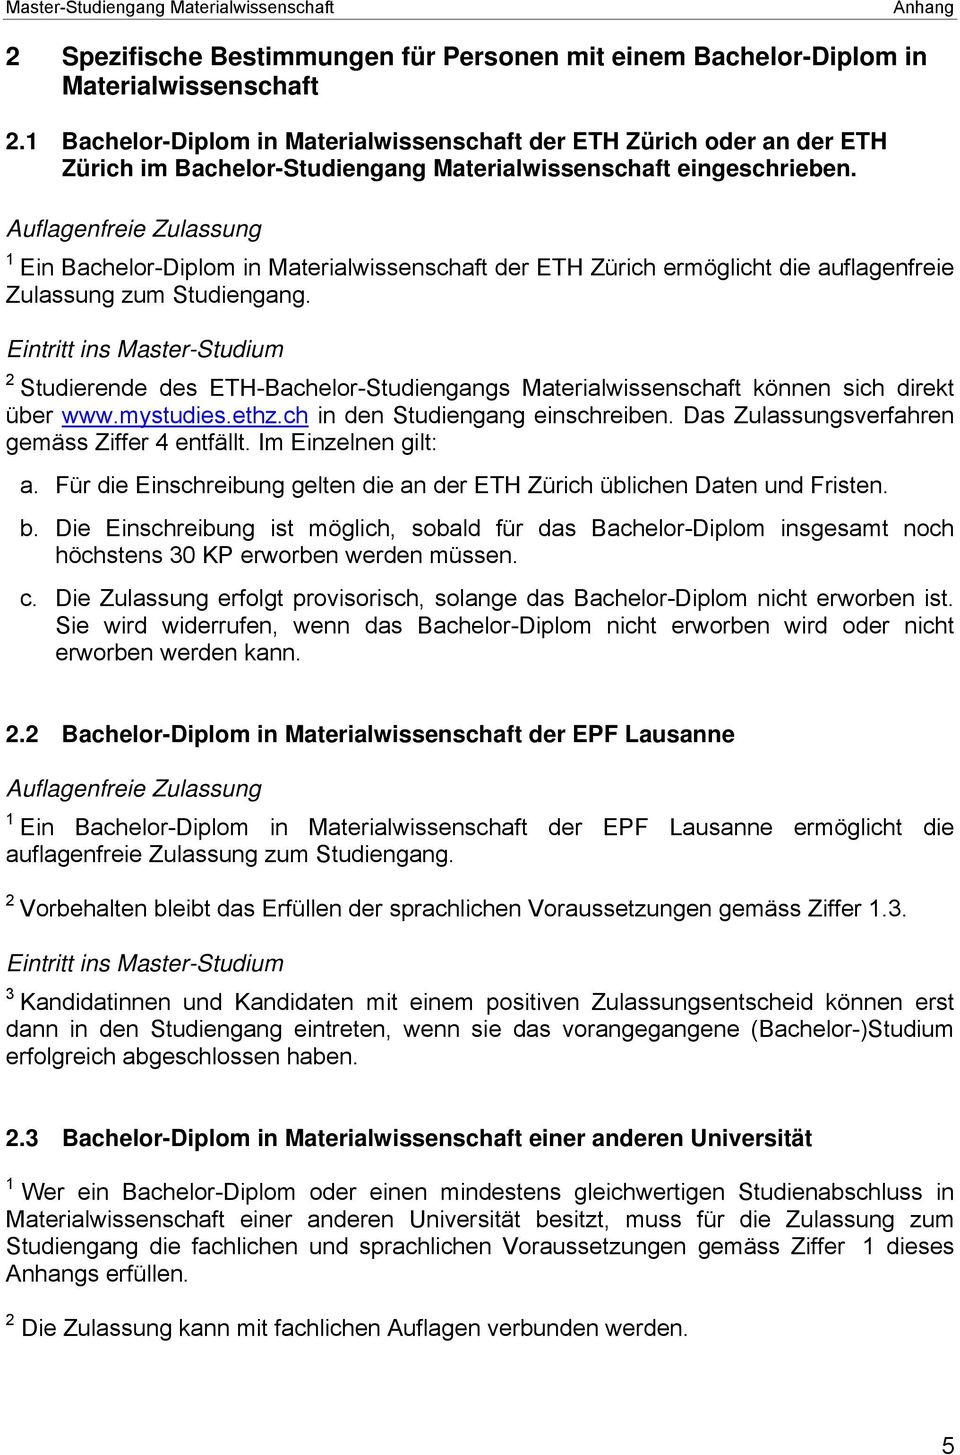 Auflagenfreie Zulassung 1 Ein Bachelor-Diplom in Materialwissenschaft der ETH Zürich ermöglicht die auflagenfreie Zulassung zum Studiengang.